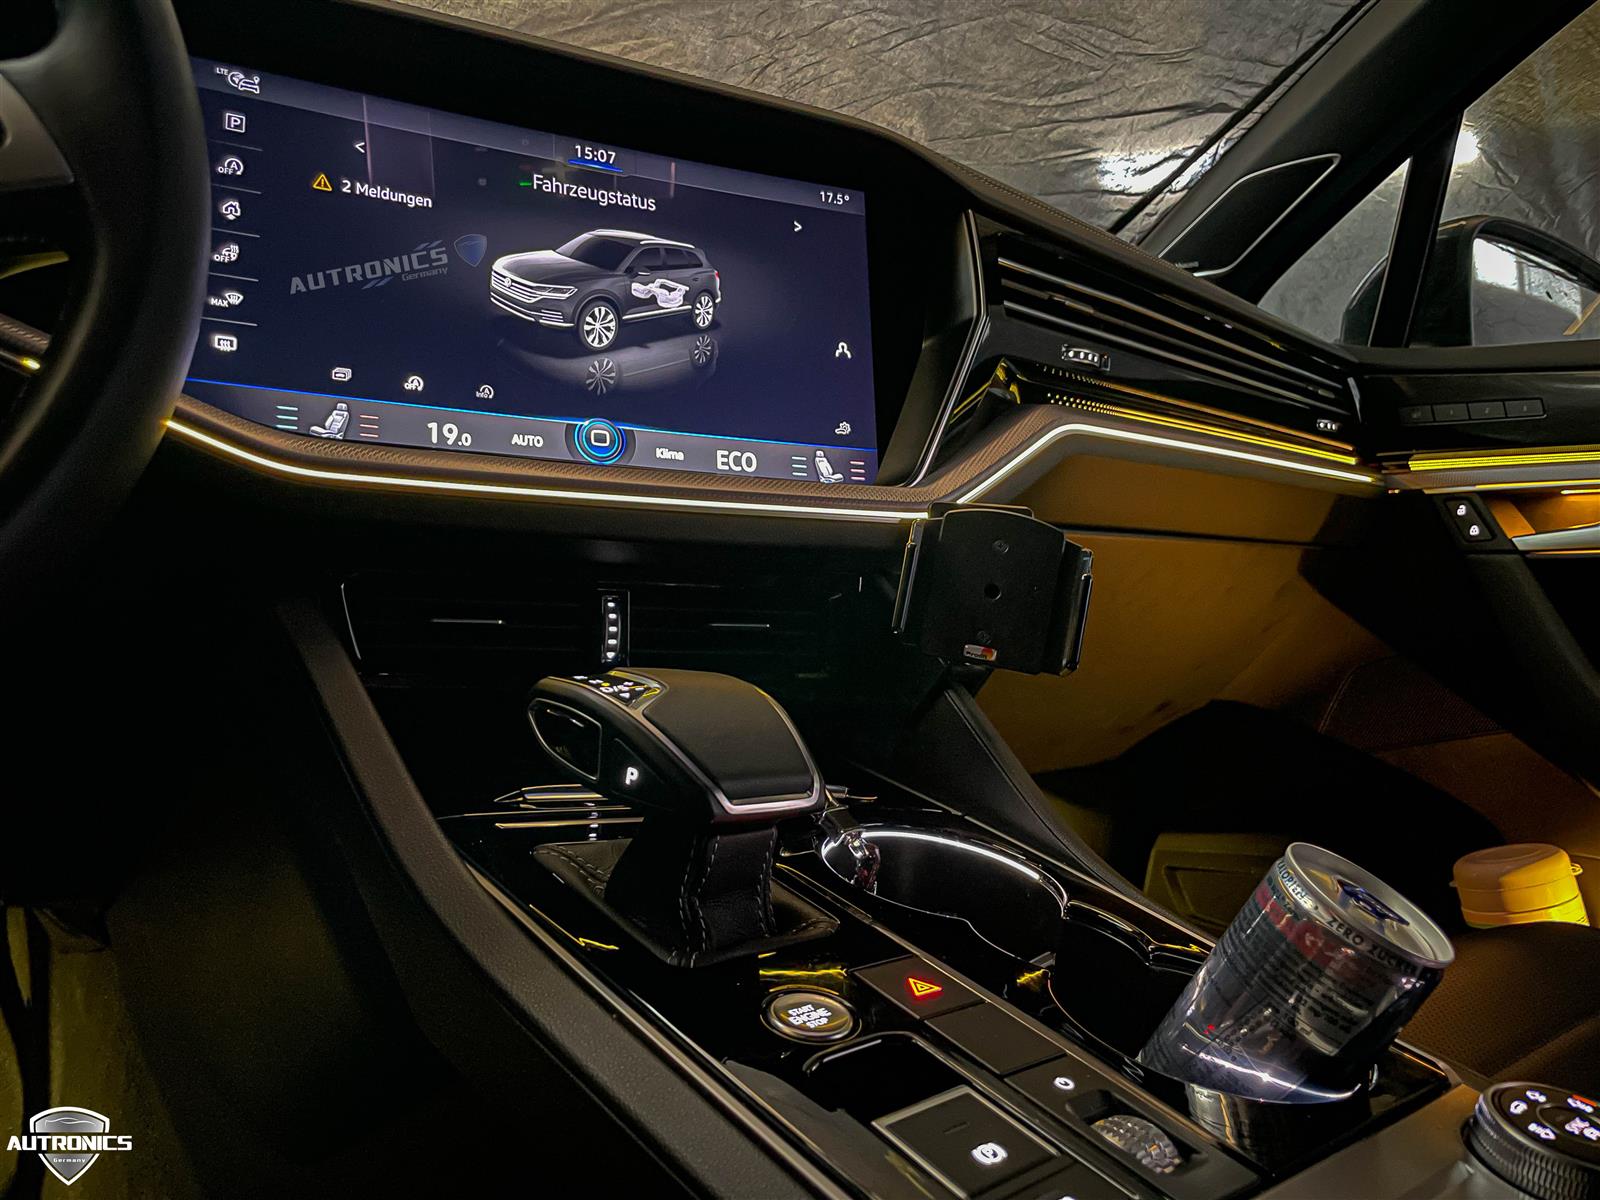 Ambientebeleuchtung Nachrüsten im Auto Innenraumbeleuchtung Beleuchtung geeignet für VW Tiguan 3. Generation - 04